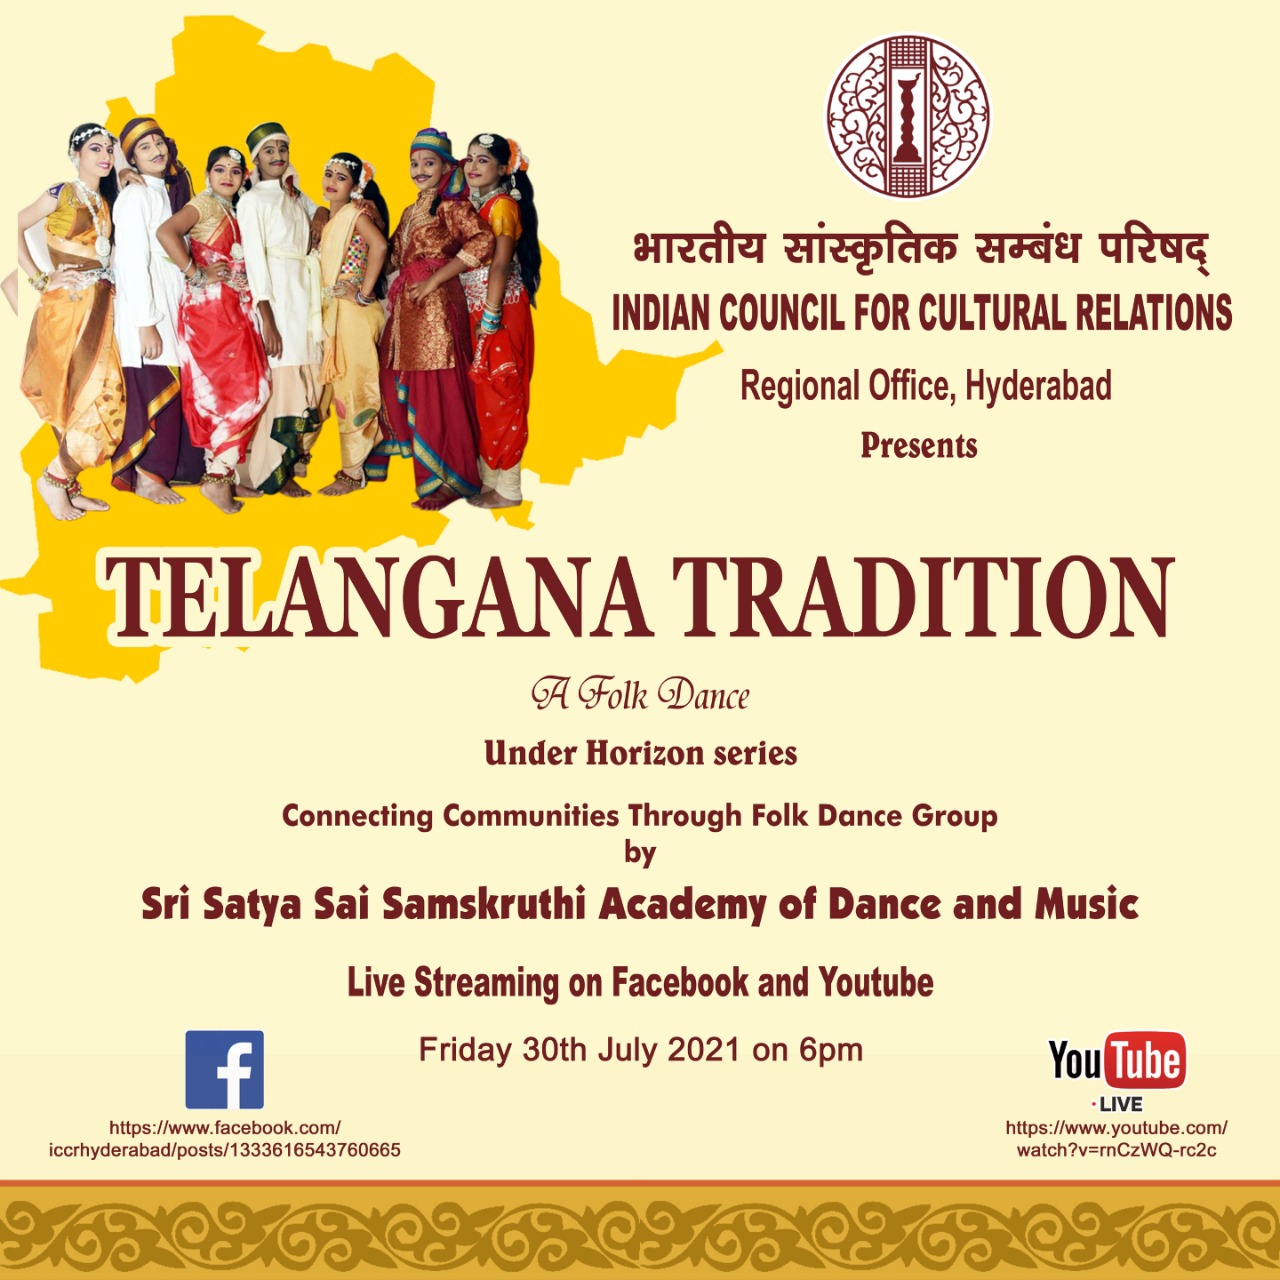 तेलंगाना परंपरा - एक लोक नृत्य प्रदर्शन शुक्रवार 30 जुलाई, 2021 को शाम 6.00 बजे आईसीसीआर हैदराबाद द्वारा फेसबुक और यूट्यूब पर लाइव